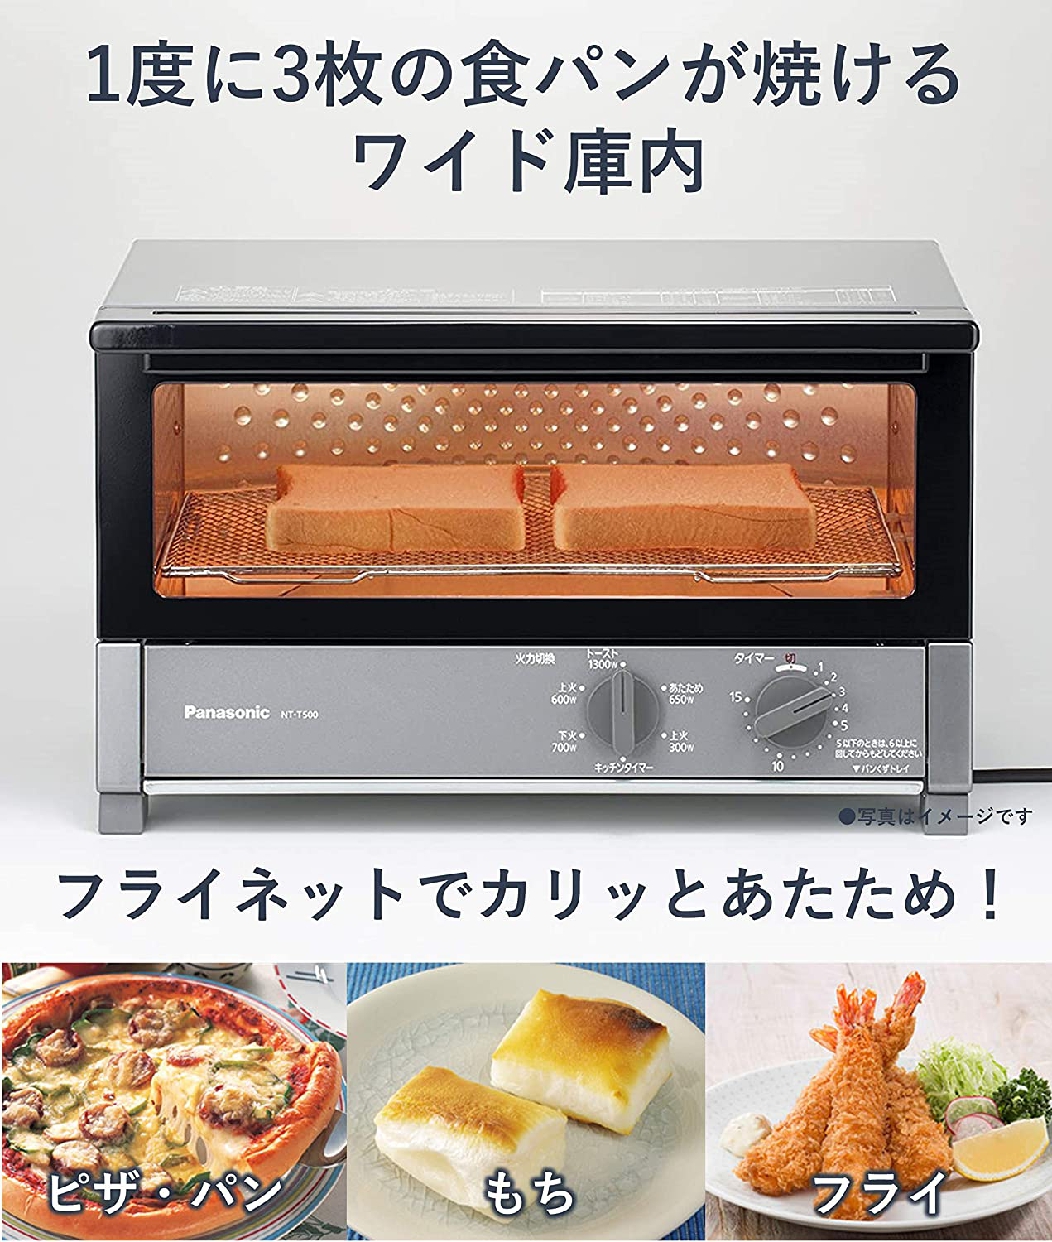 Panasonic(パナソニック) オーブントースターNT-T500の商品画像サムネ2 